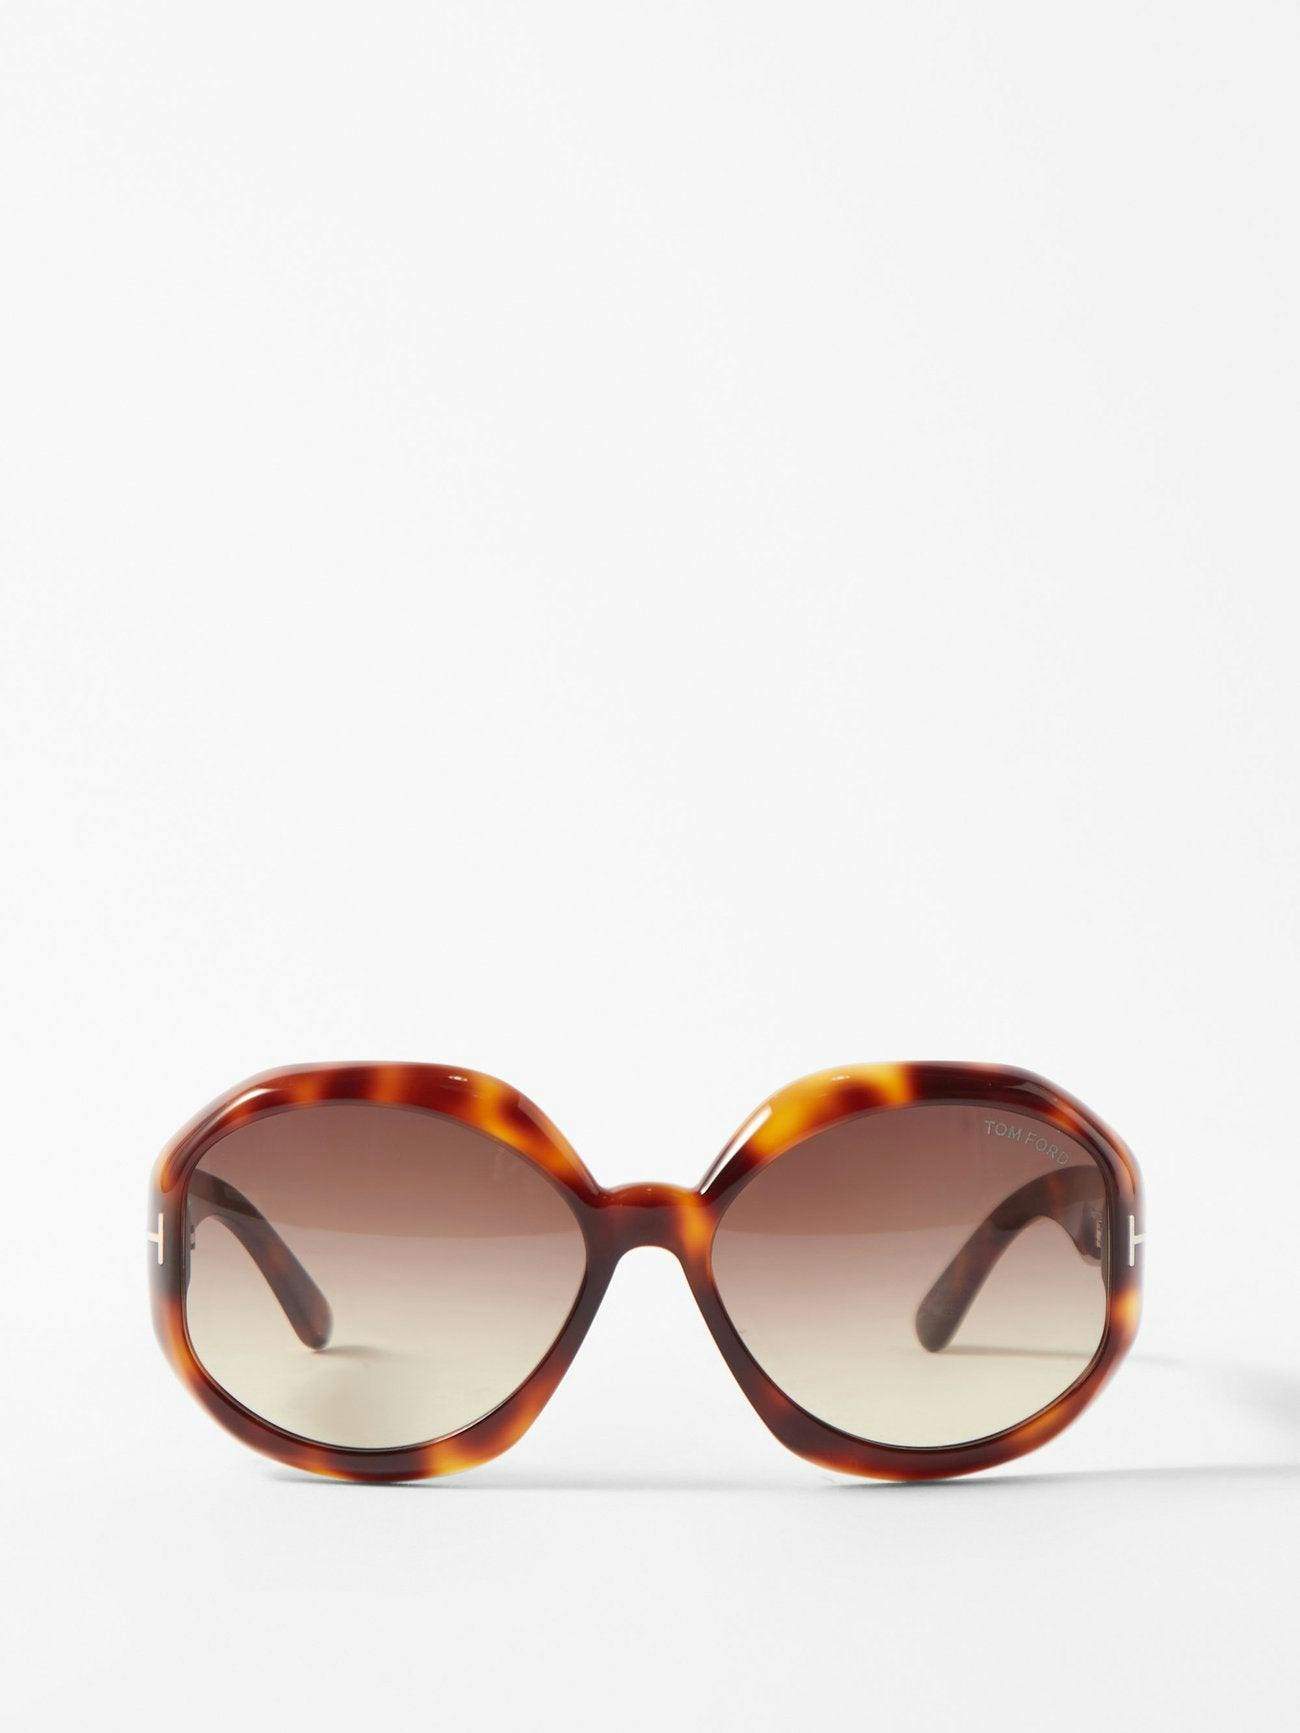 Brown tortoiseshell-acetate round sunglasses